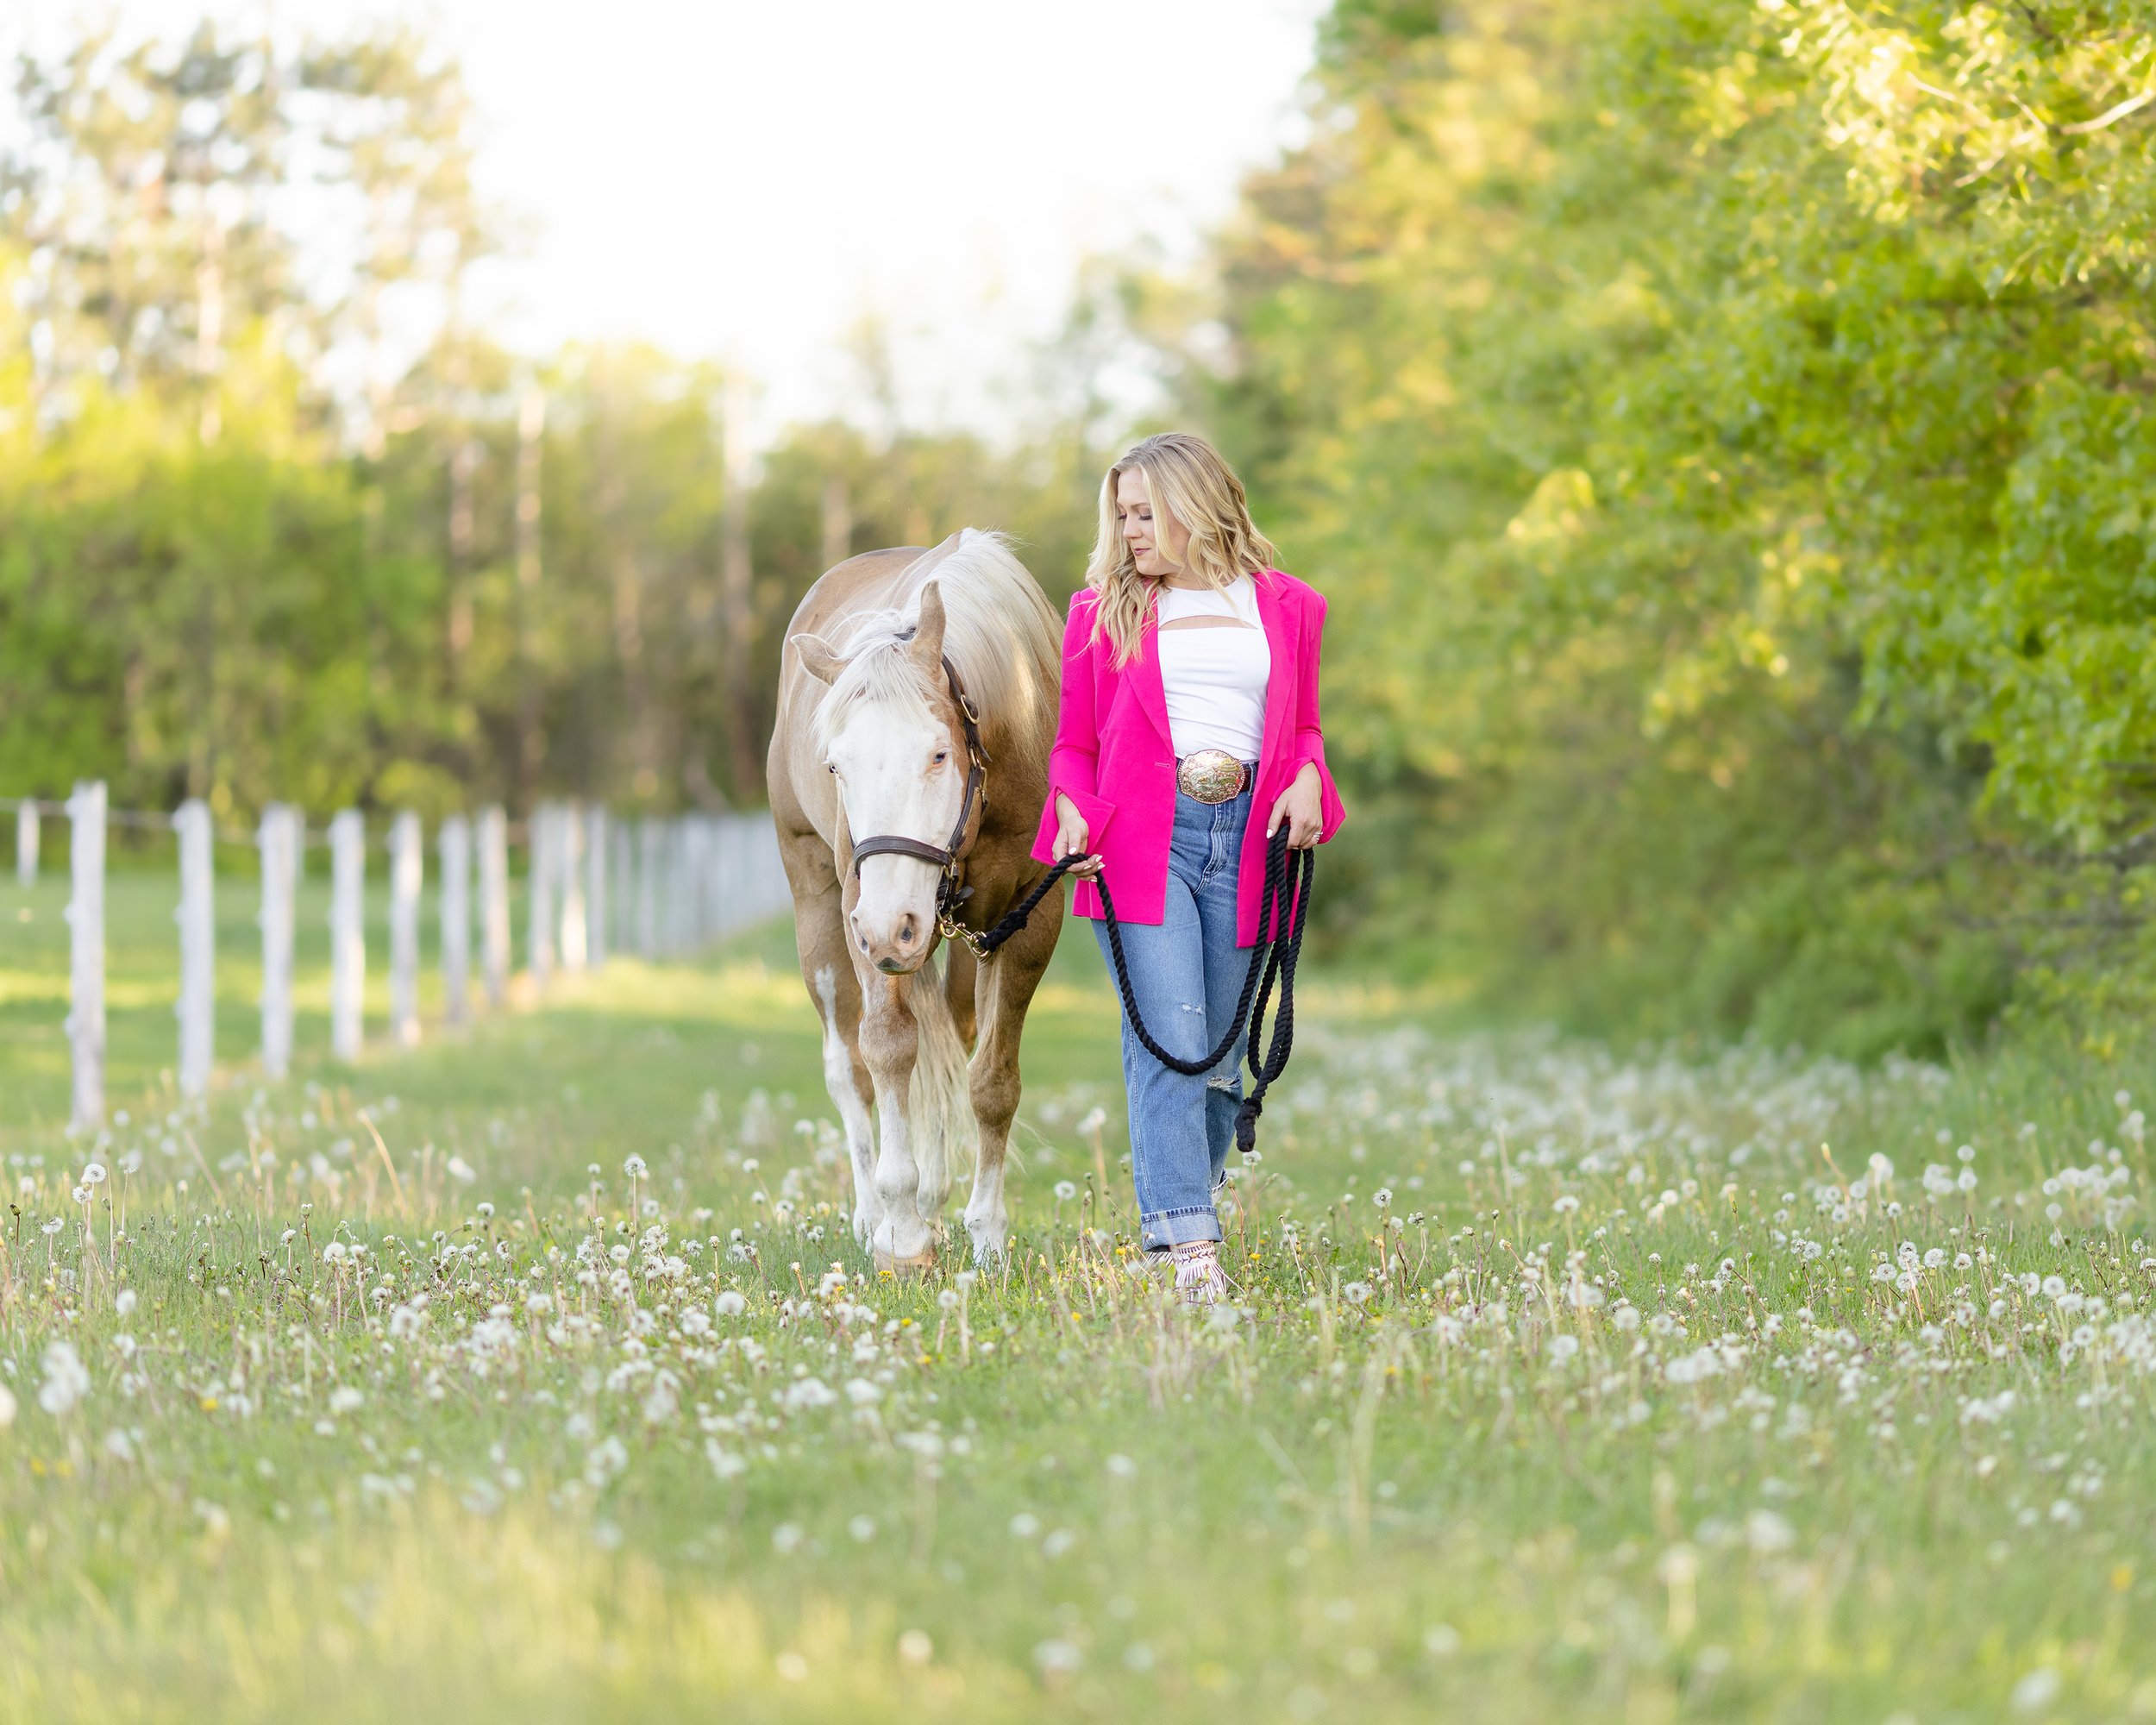 Horse &amp; Rider photoshoot with Miranda Lambert Vibes